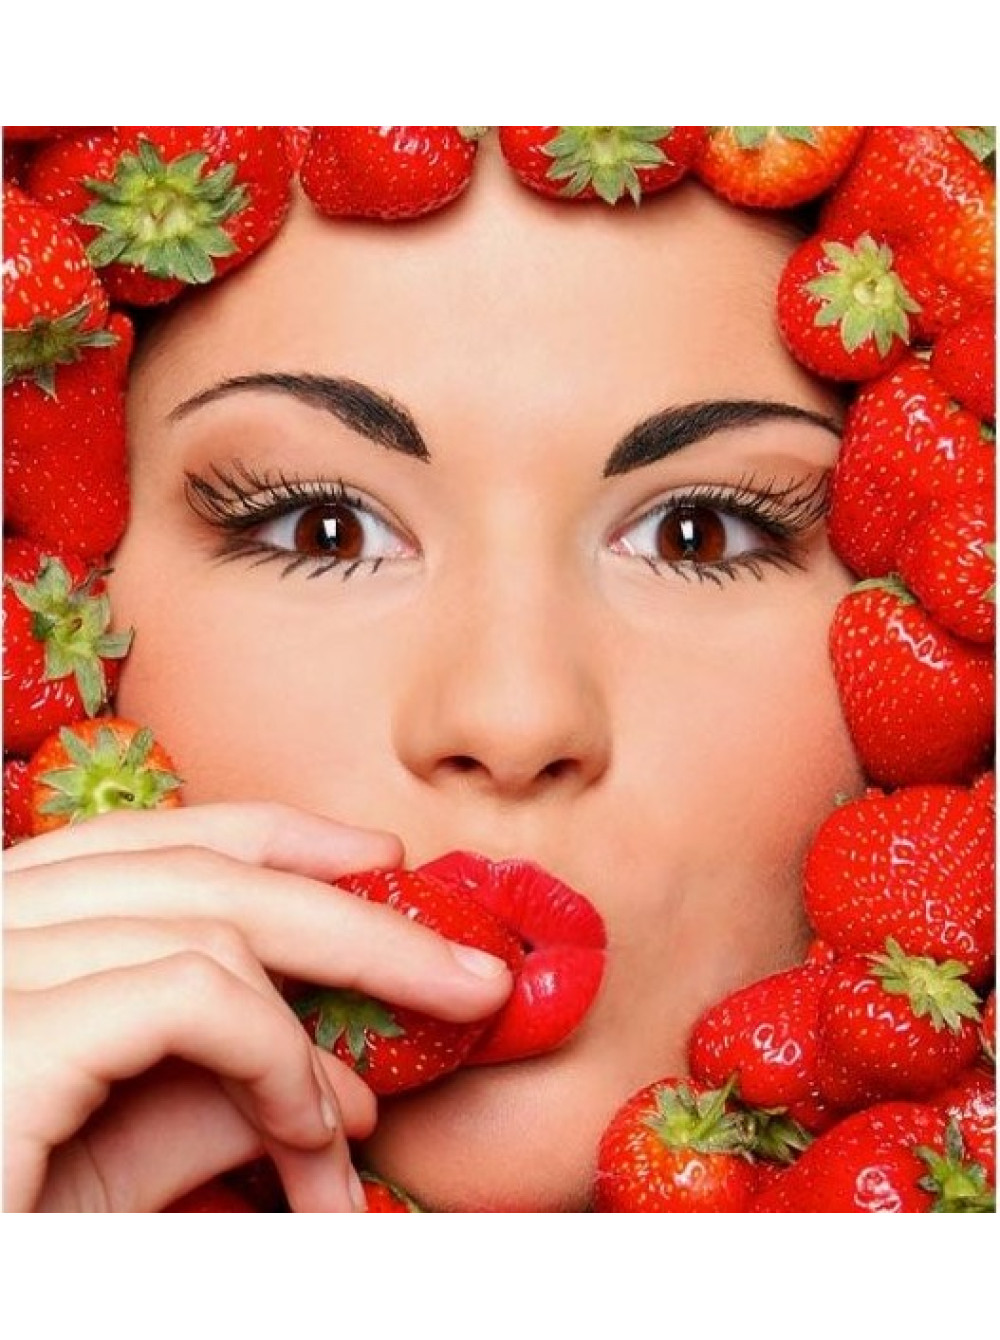 Fruit girl. Фотосессия с фруктами. Красивые девушки с фруктами. Девушка с клубникой. Ягода с лицом.